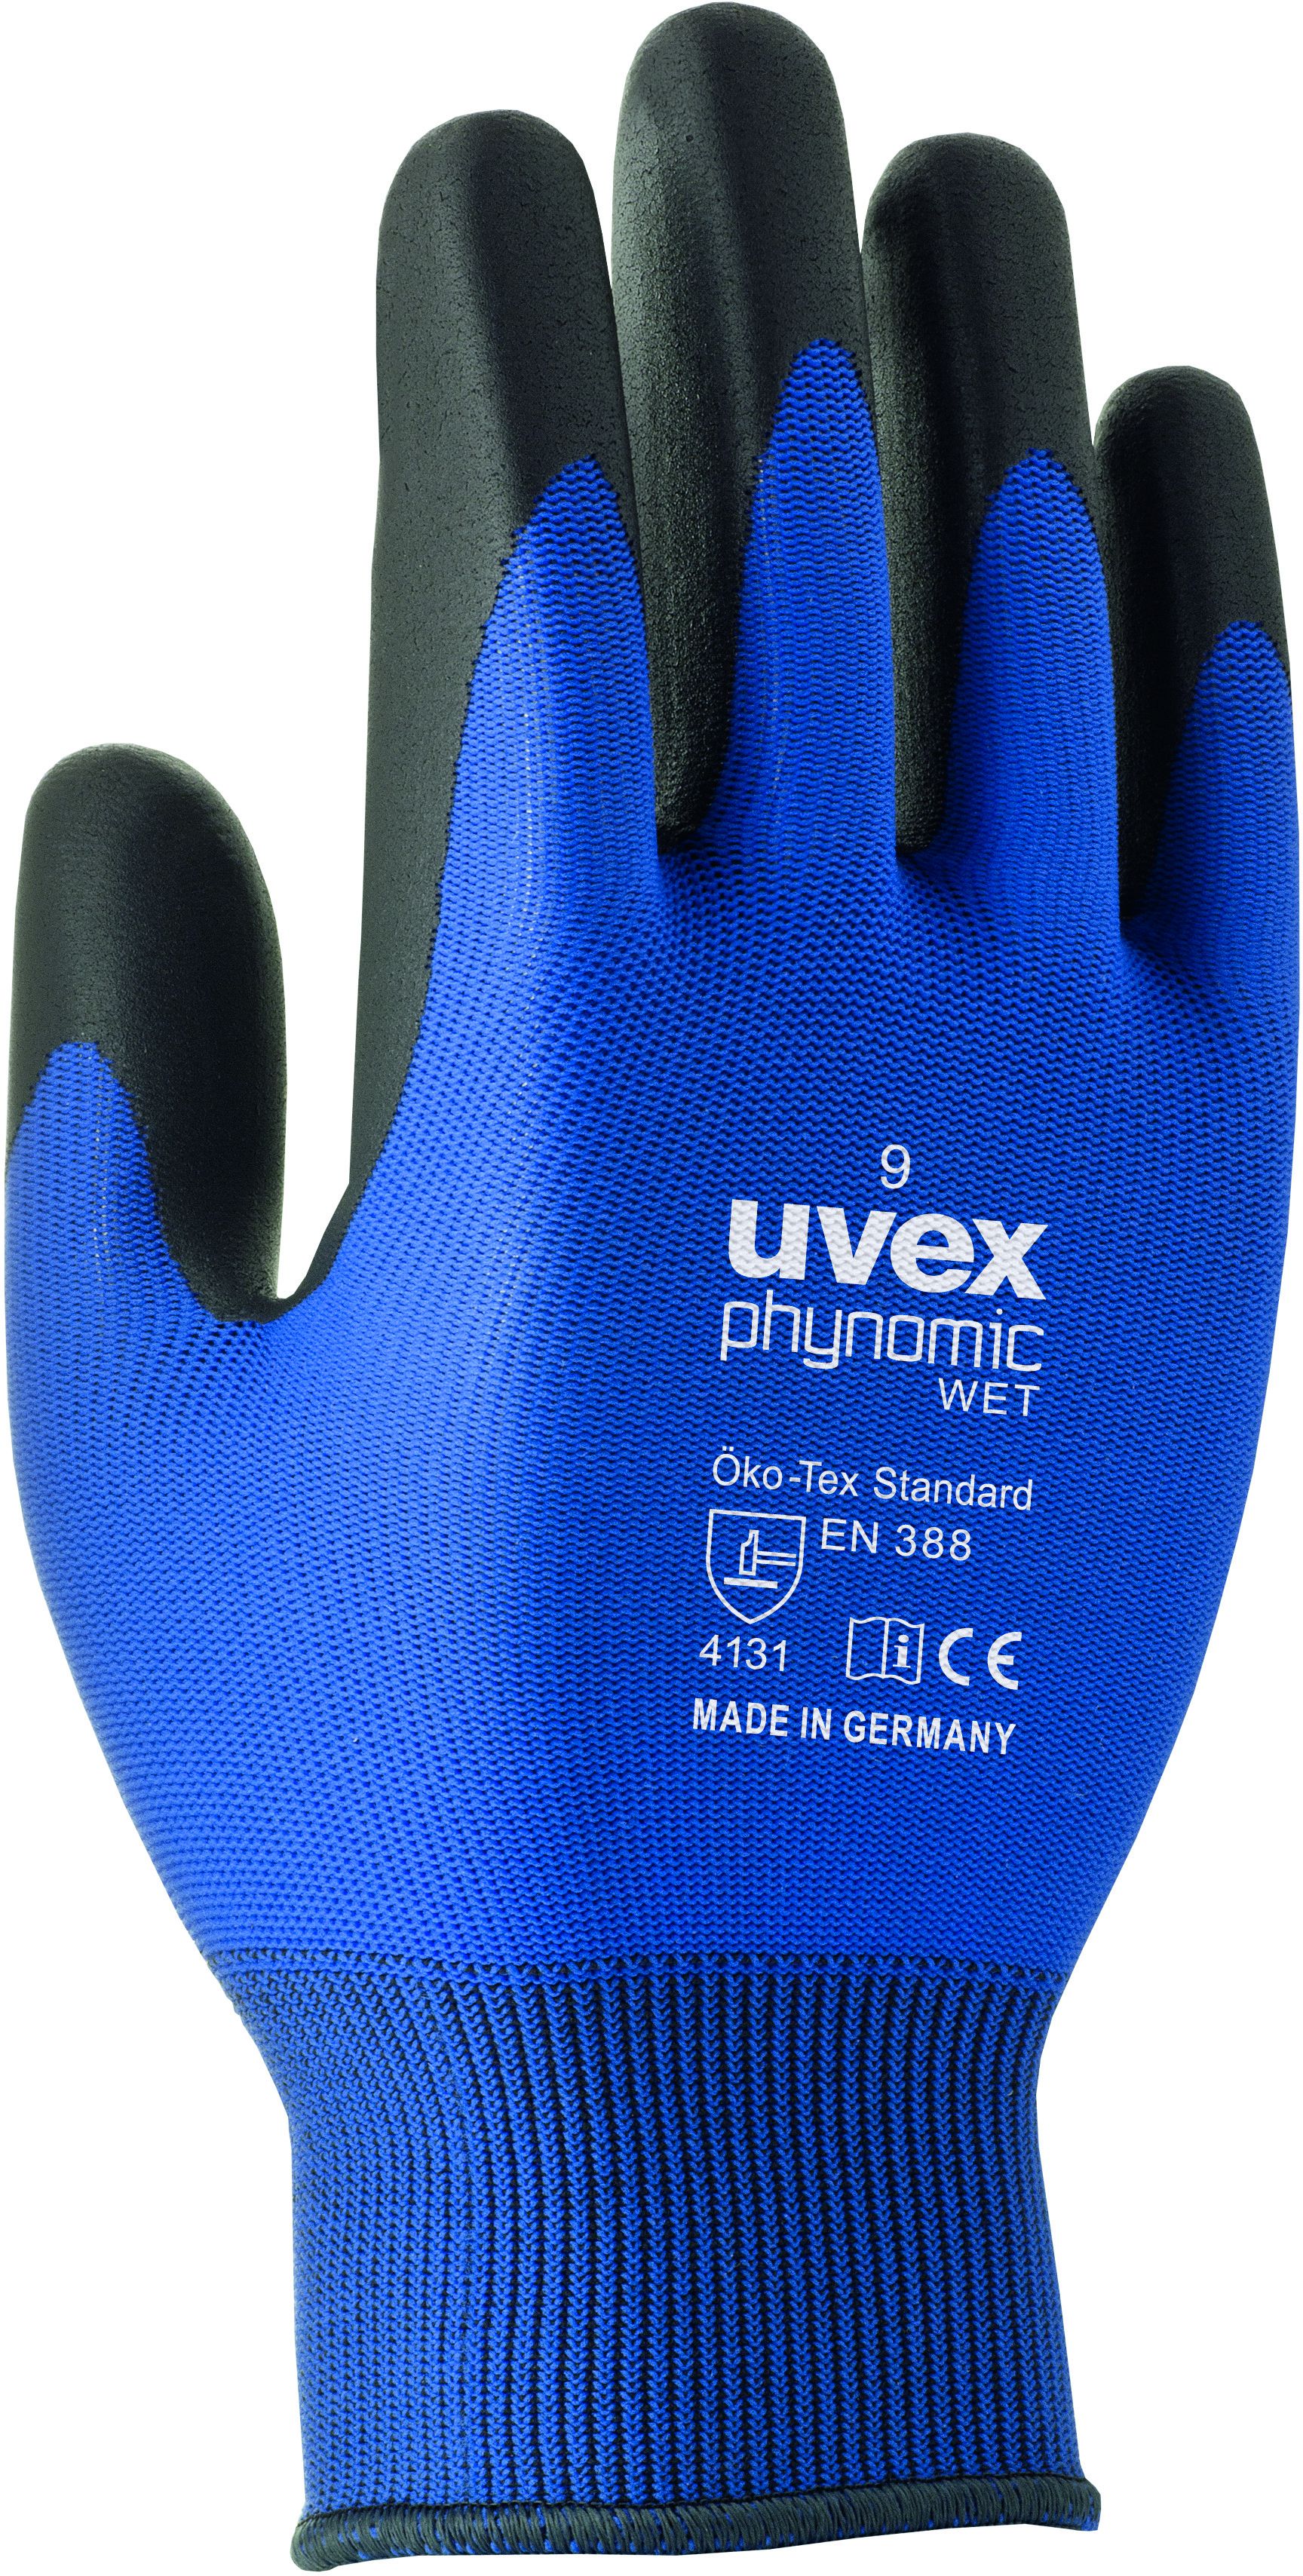 UVEX Arbeitshandschuh phynomic WET Gr. 8, blau/anthrazit, Art. 60060 - Arbeitsschutz